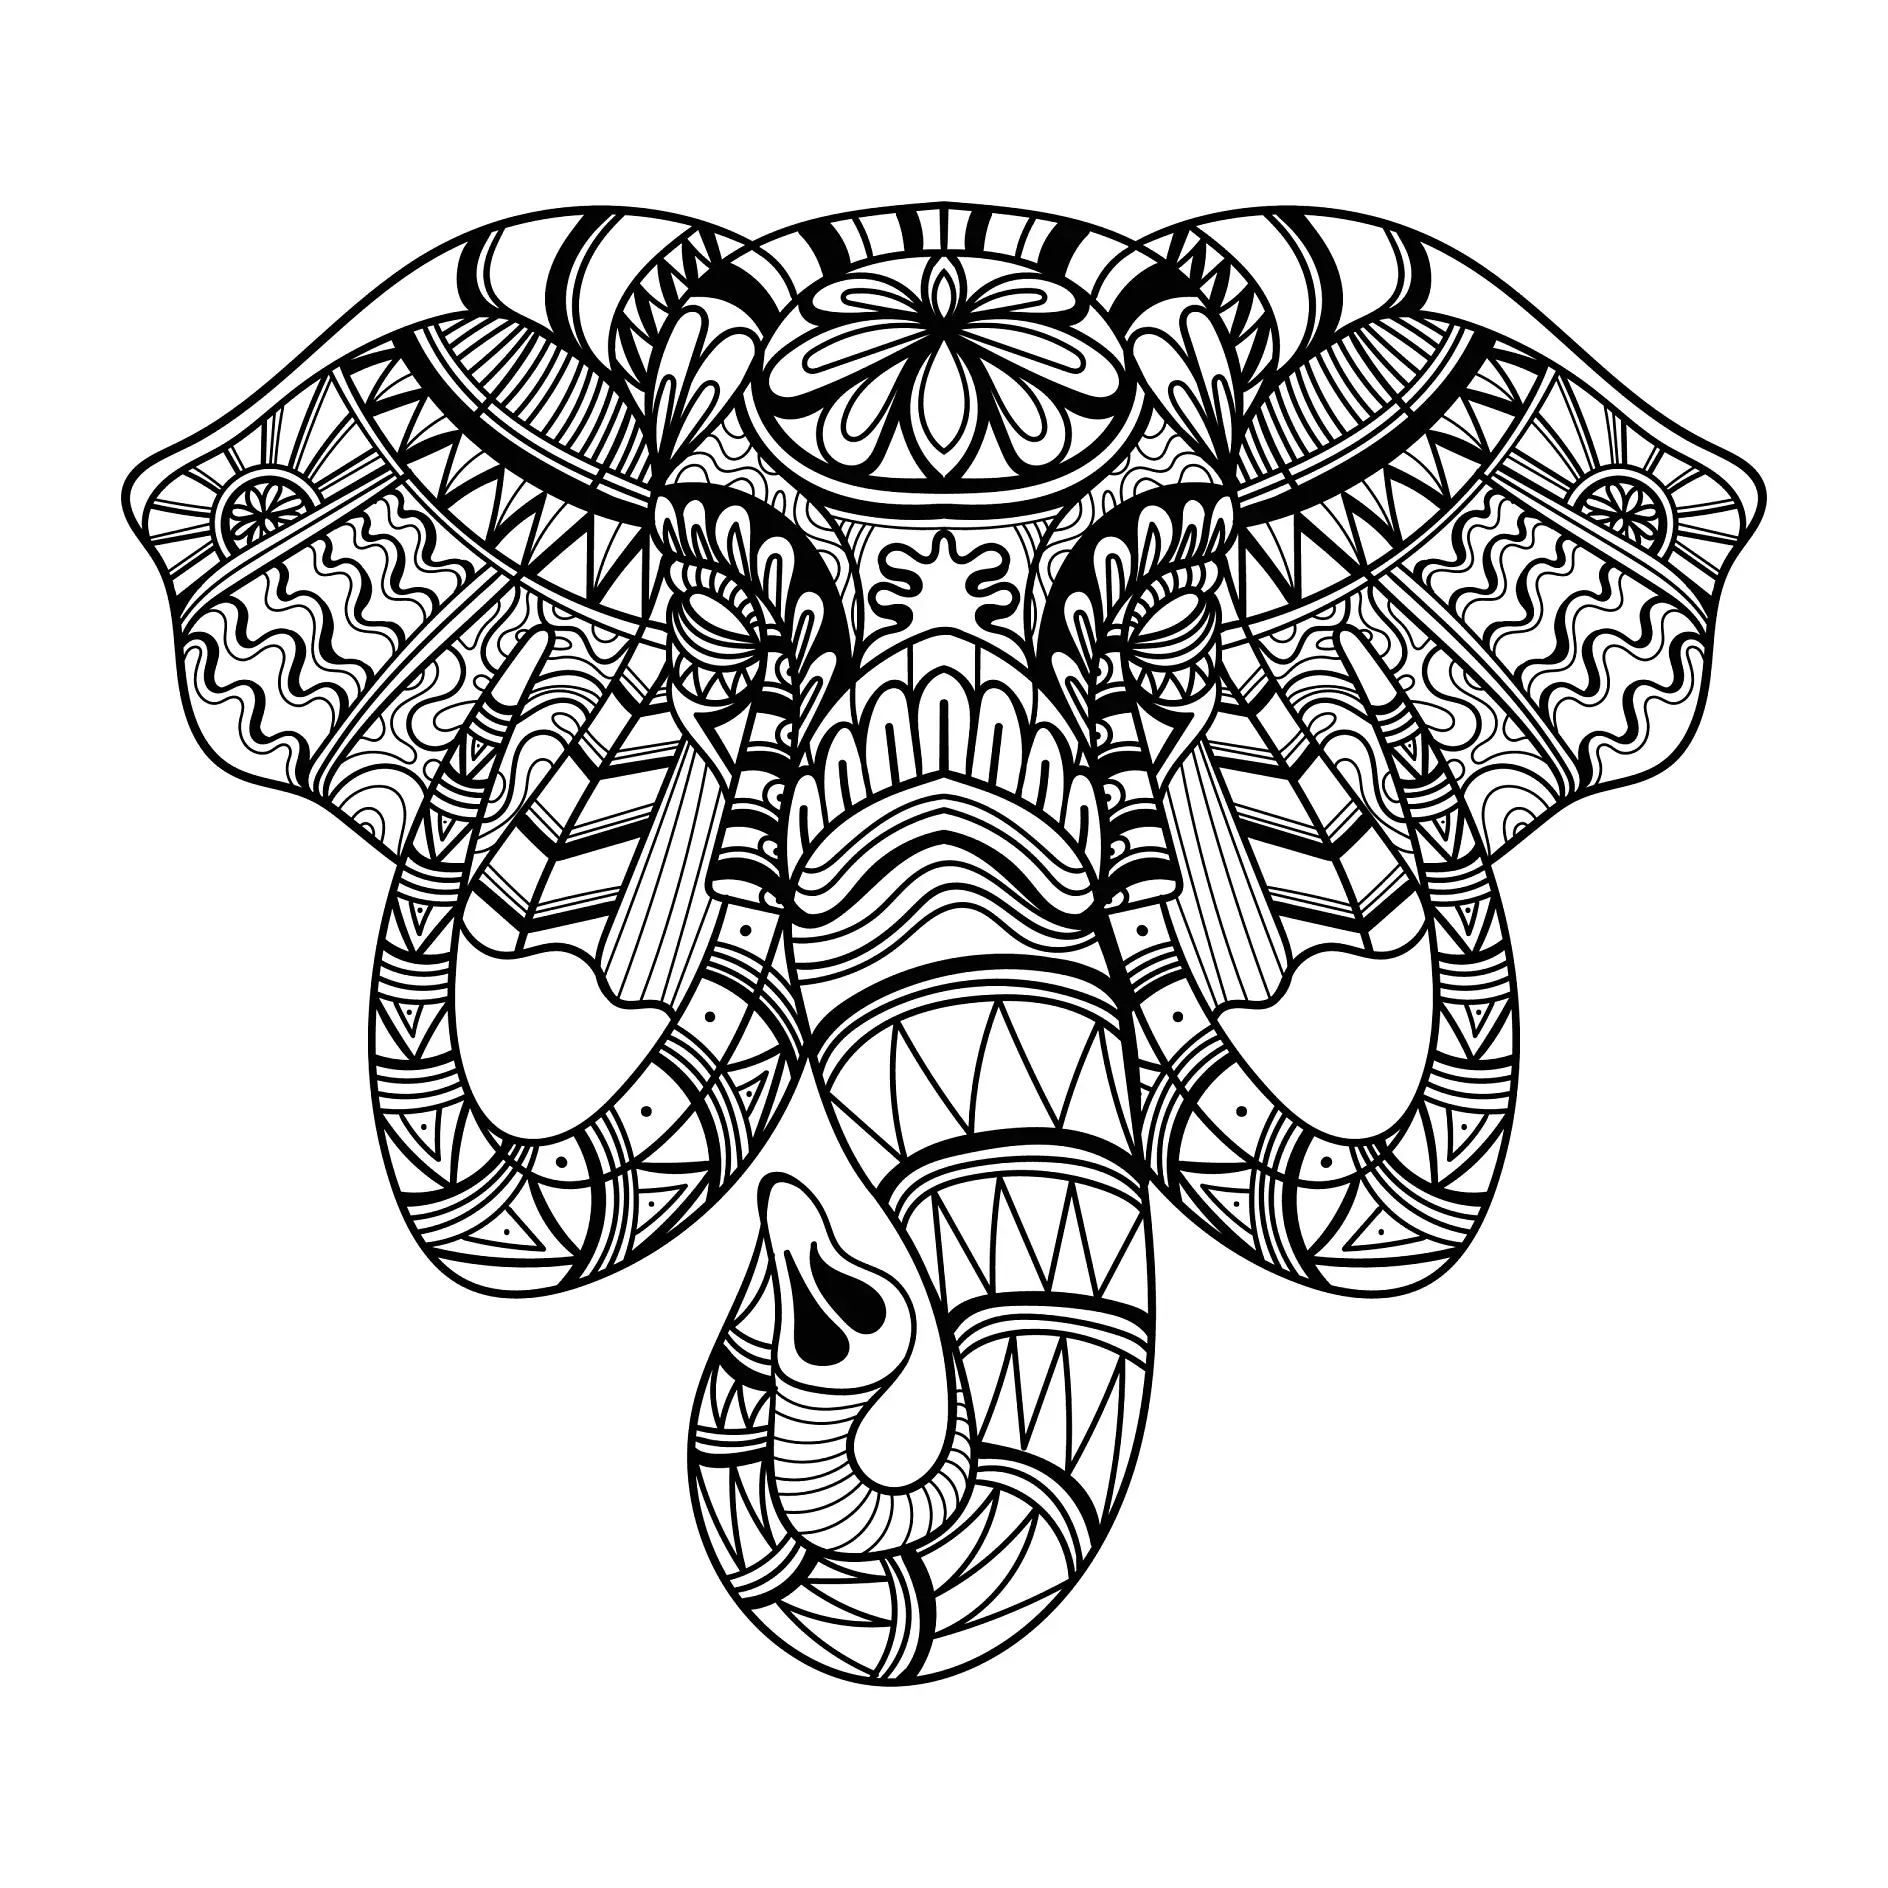 Ausmalbild Mandala Elefant mit detaillierten Mustern und dekorativen Ornamenten